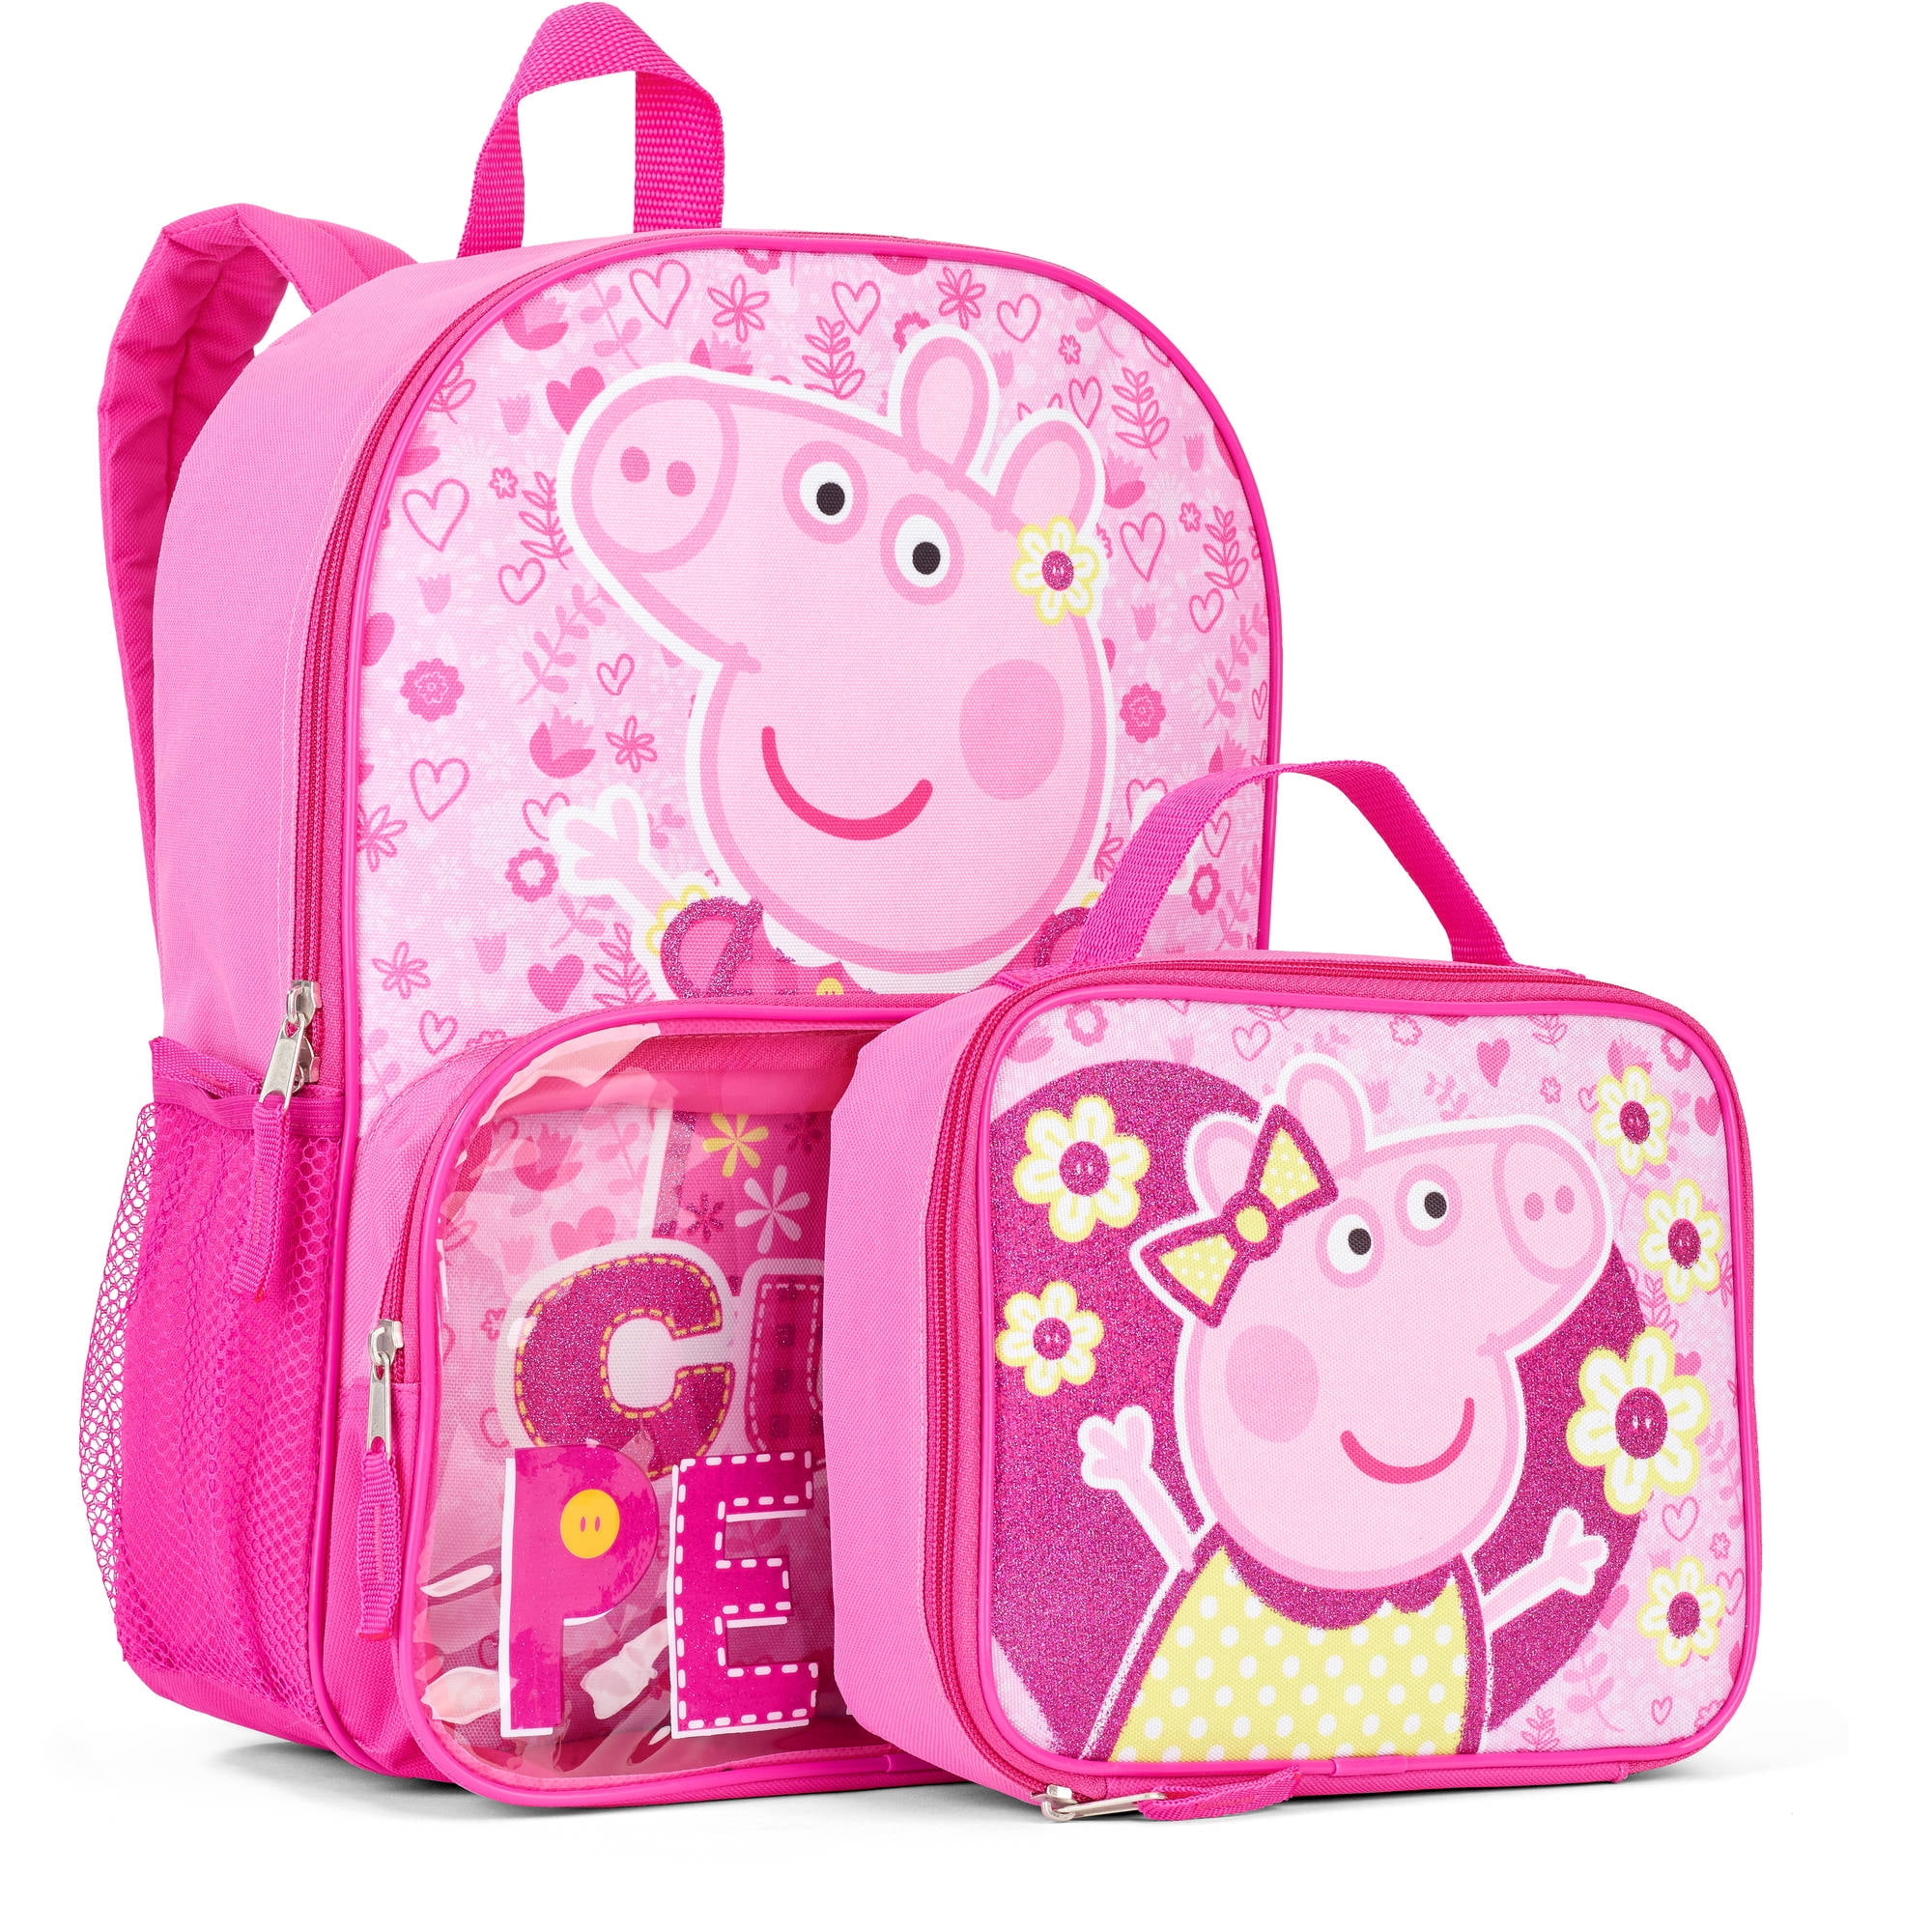 Shop Bag For Kids Peppa Pig online | Lazada.com.ph